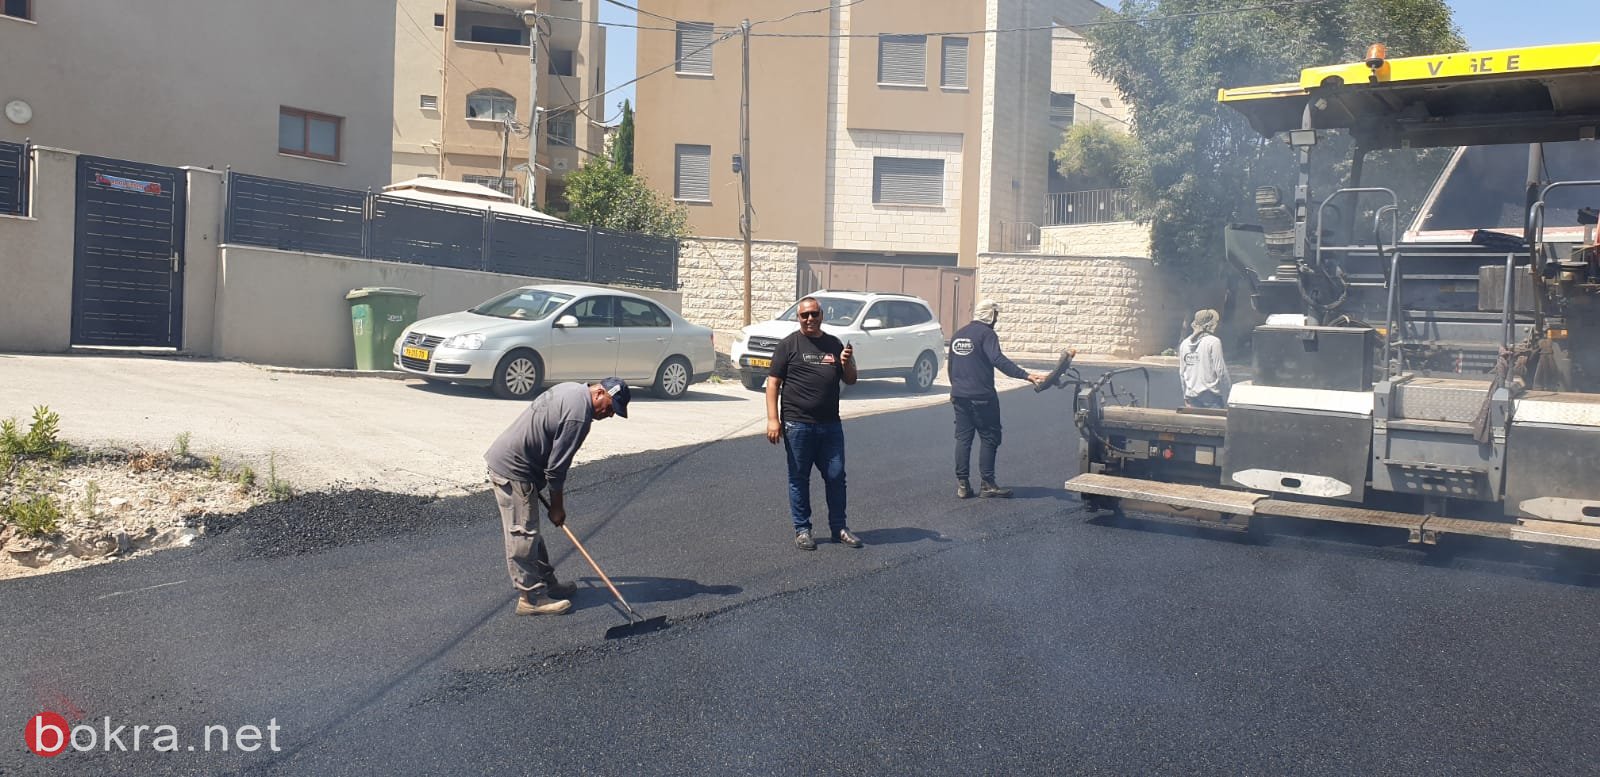 الناصرة: مشروع تعبيد شوارع المدينة يبدأ...حي البشارة يعبد اليوم-15